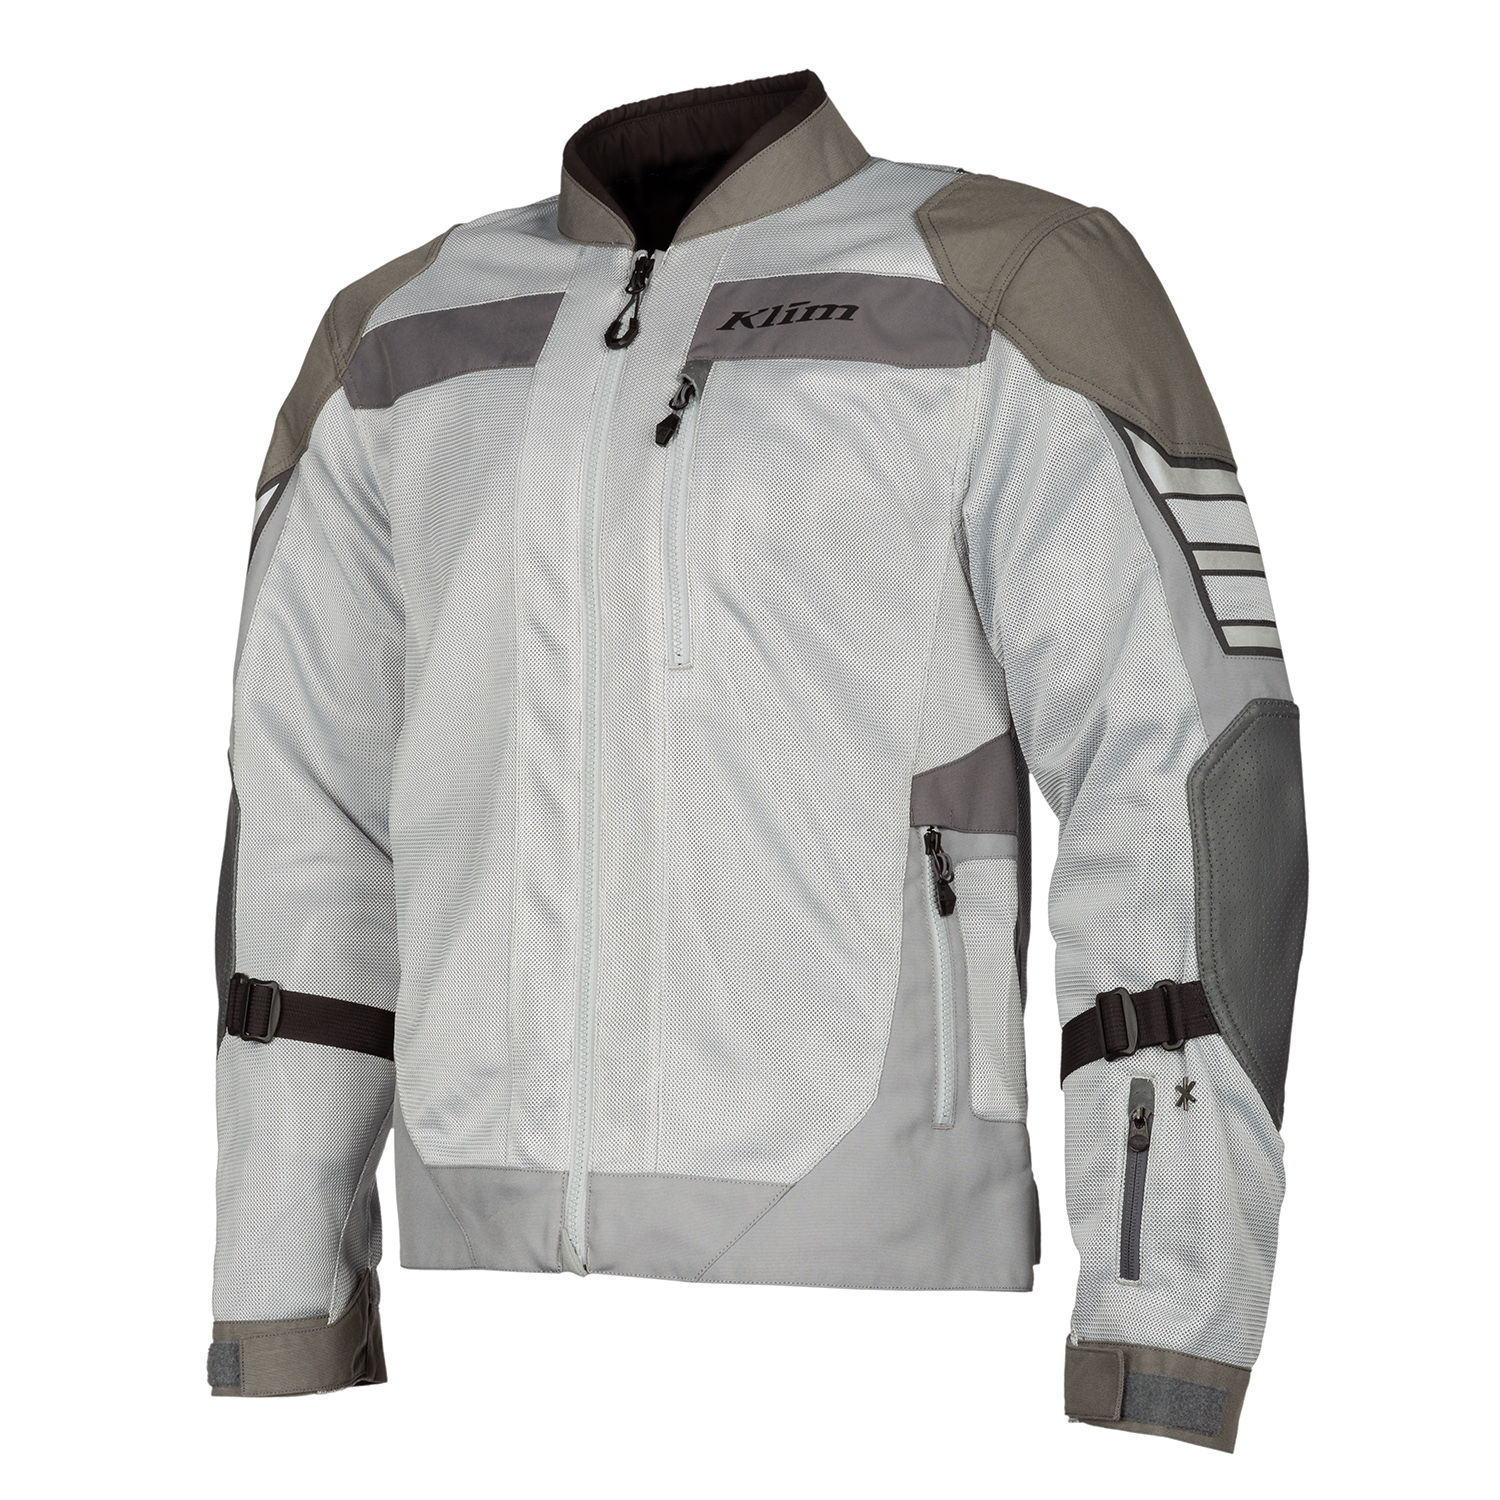 Booth dienen Wasserette Induction Pro Jacket | KLIM Men's Motorcycle Mesh Jacket